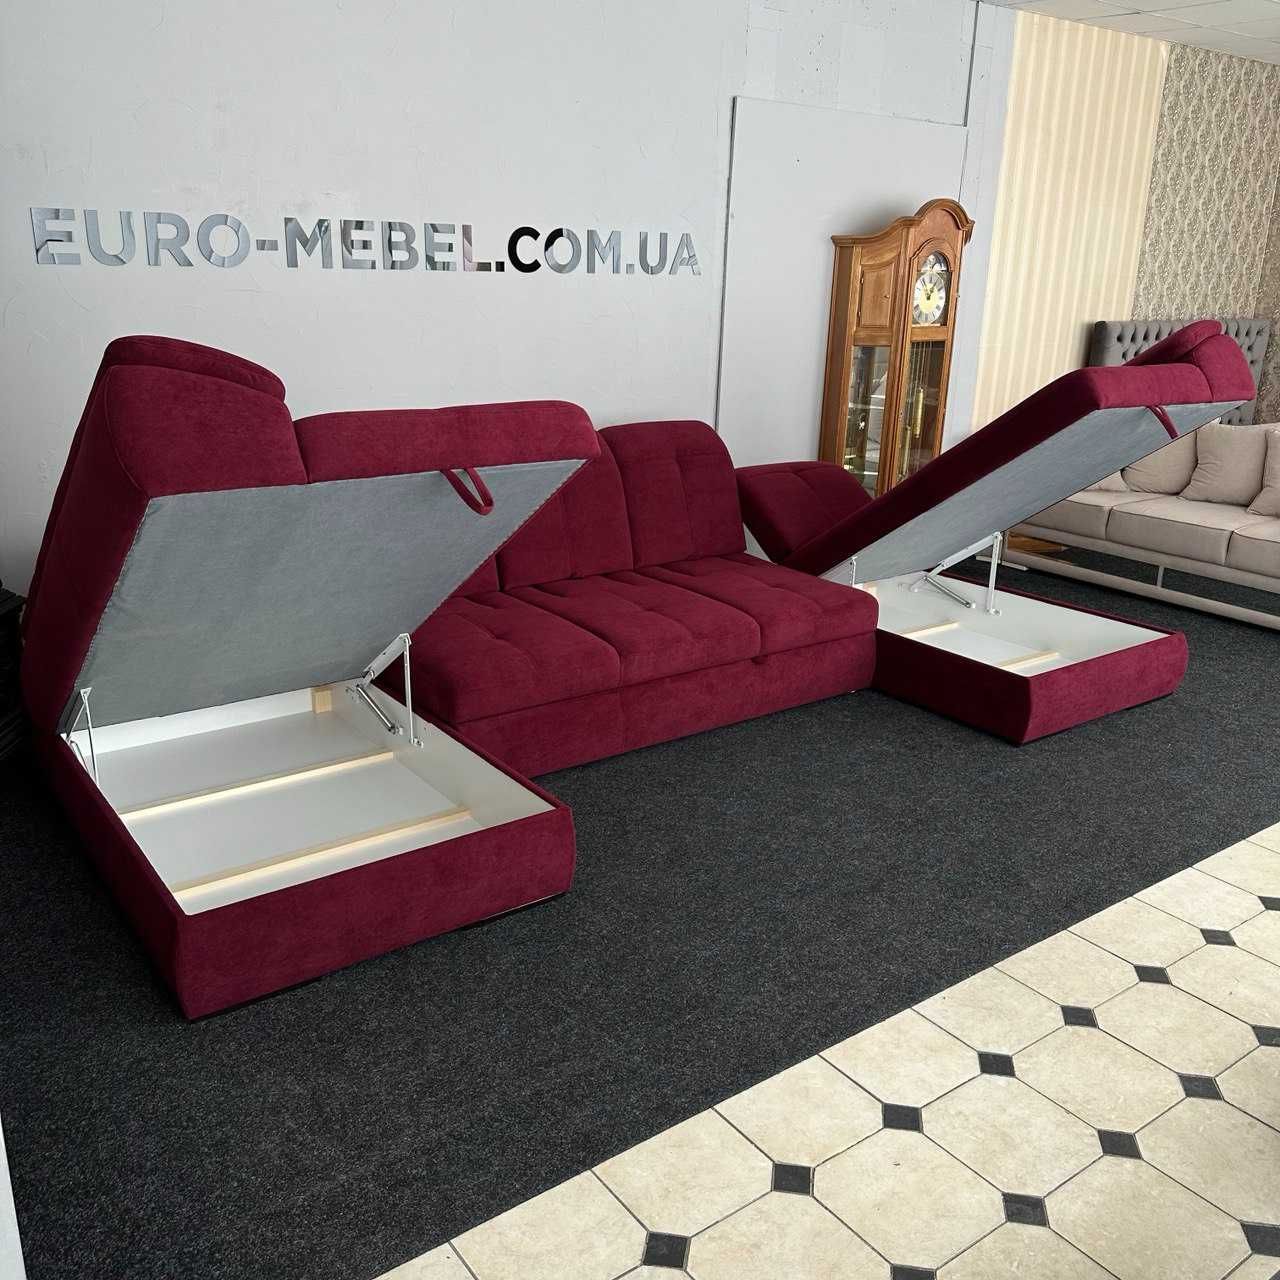 Розкладний диван в тканині п-подібної форми купити